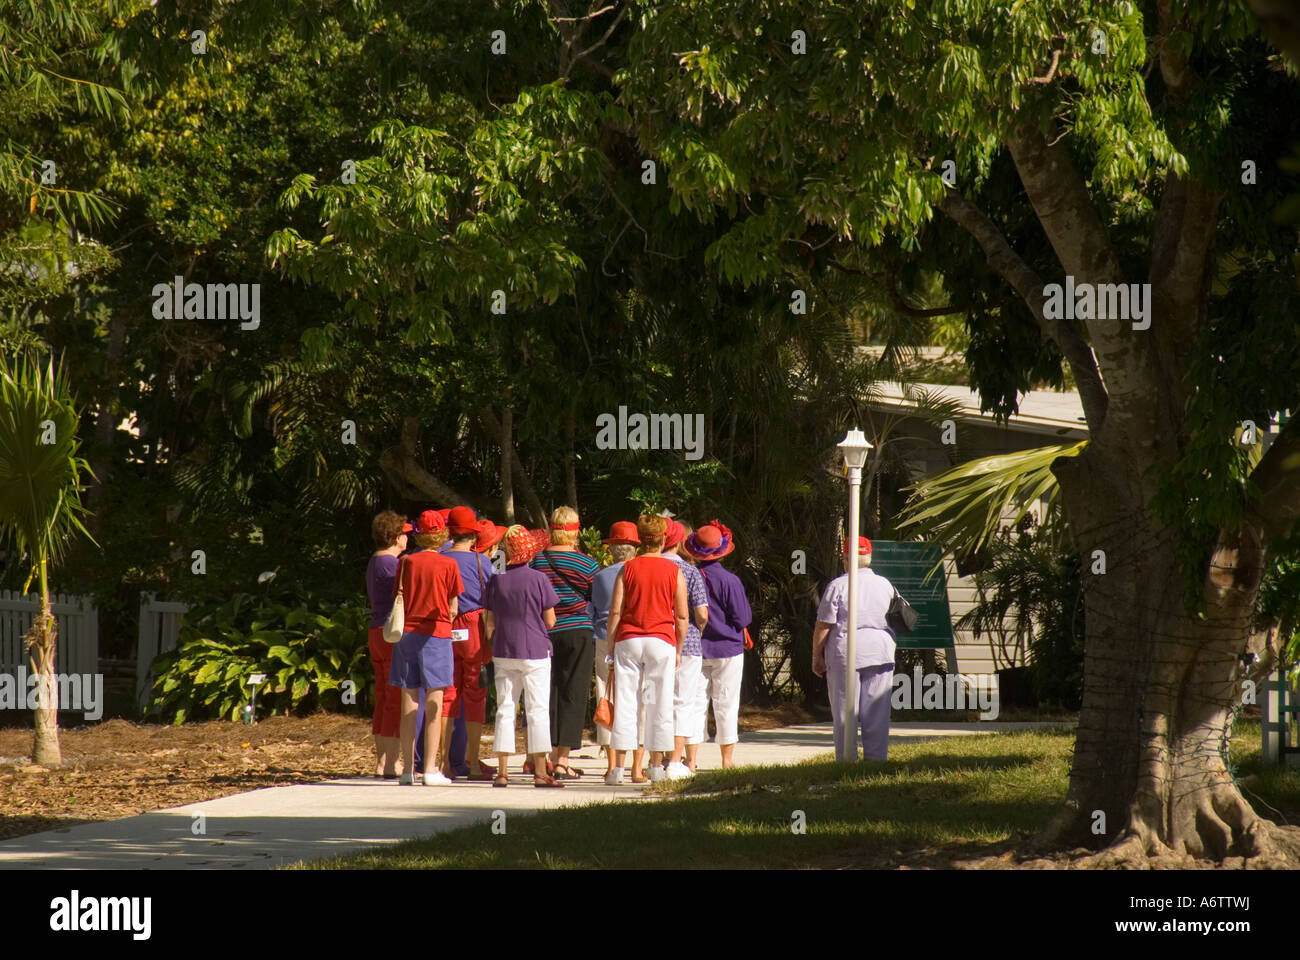 Thomas Edison winter home estate Fort Myers Florida tourists on tour on botanical gardens walkway Stock Photo